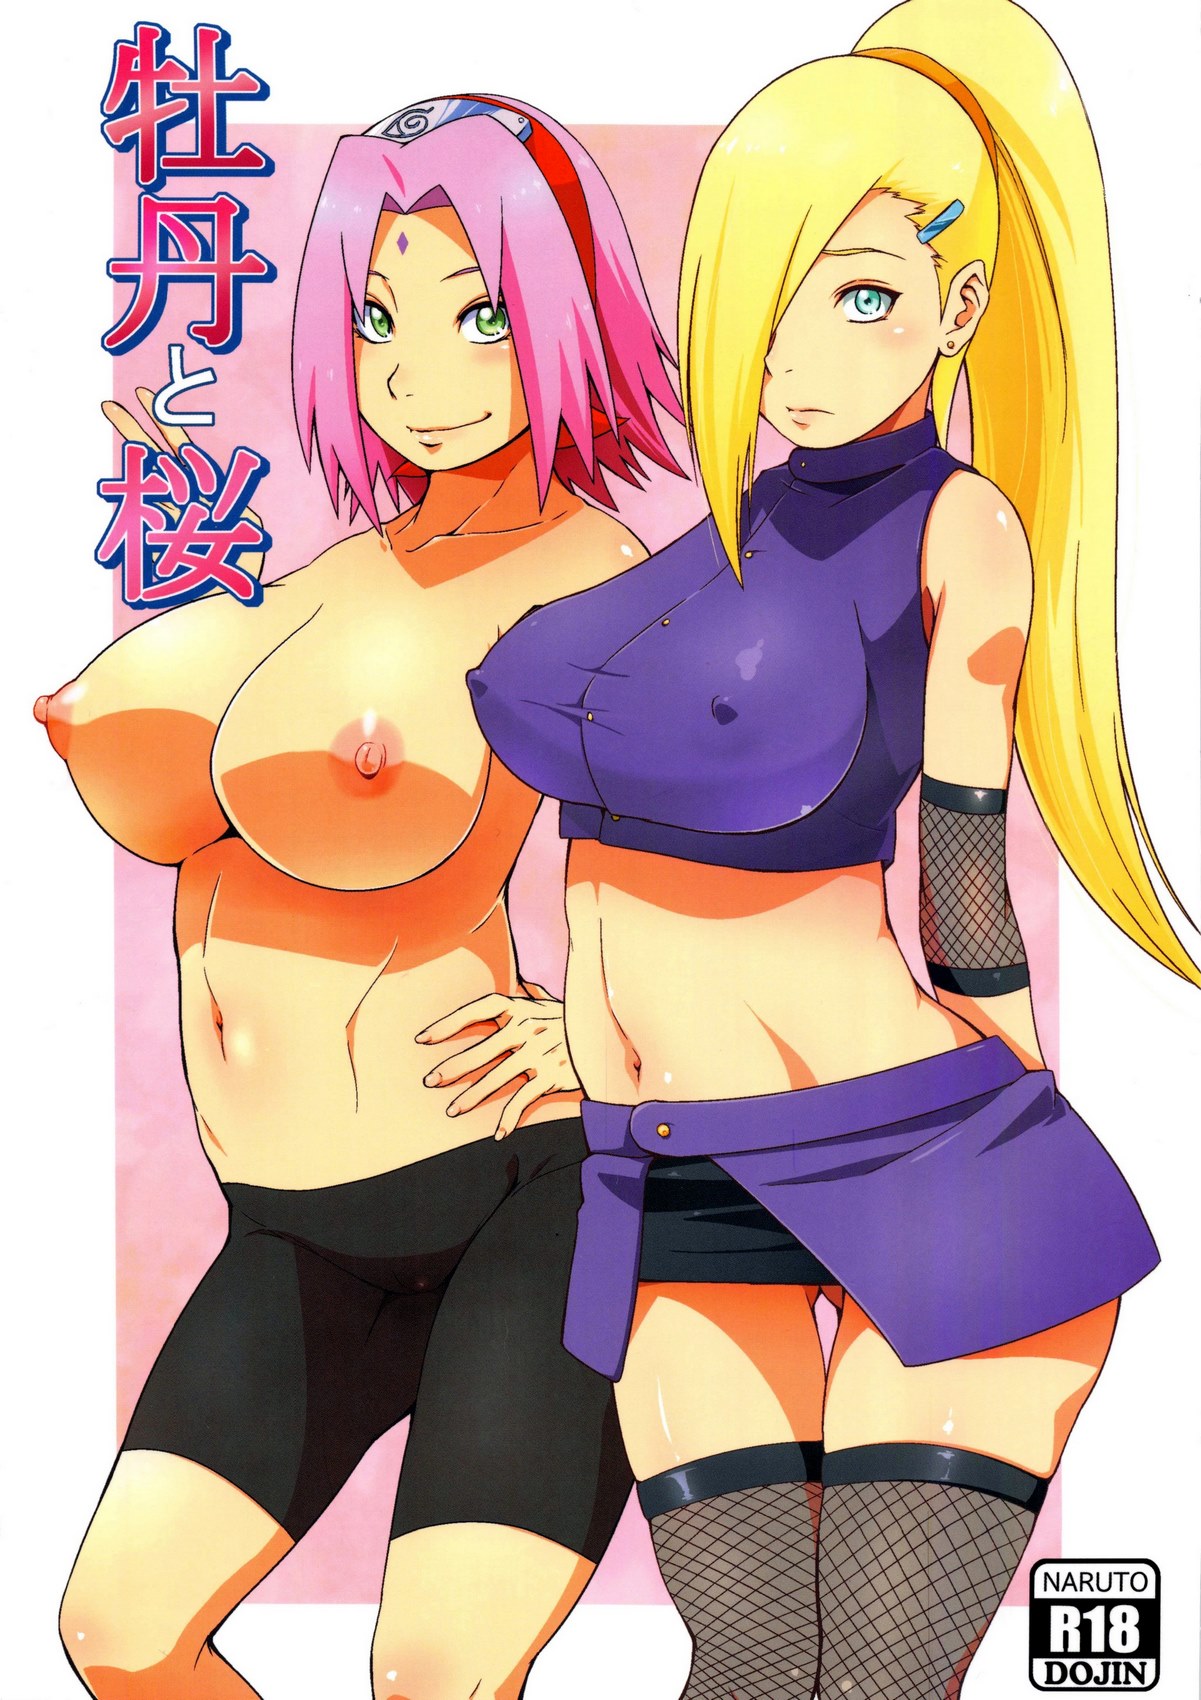 Naruto porn comics sakura x ino